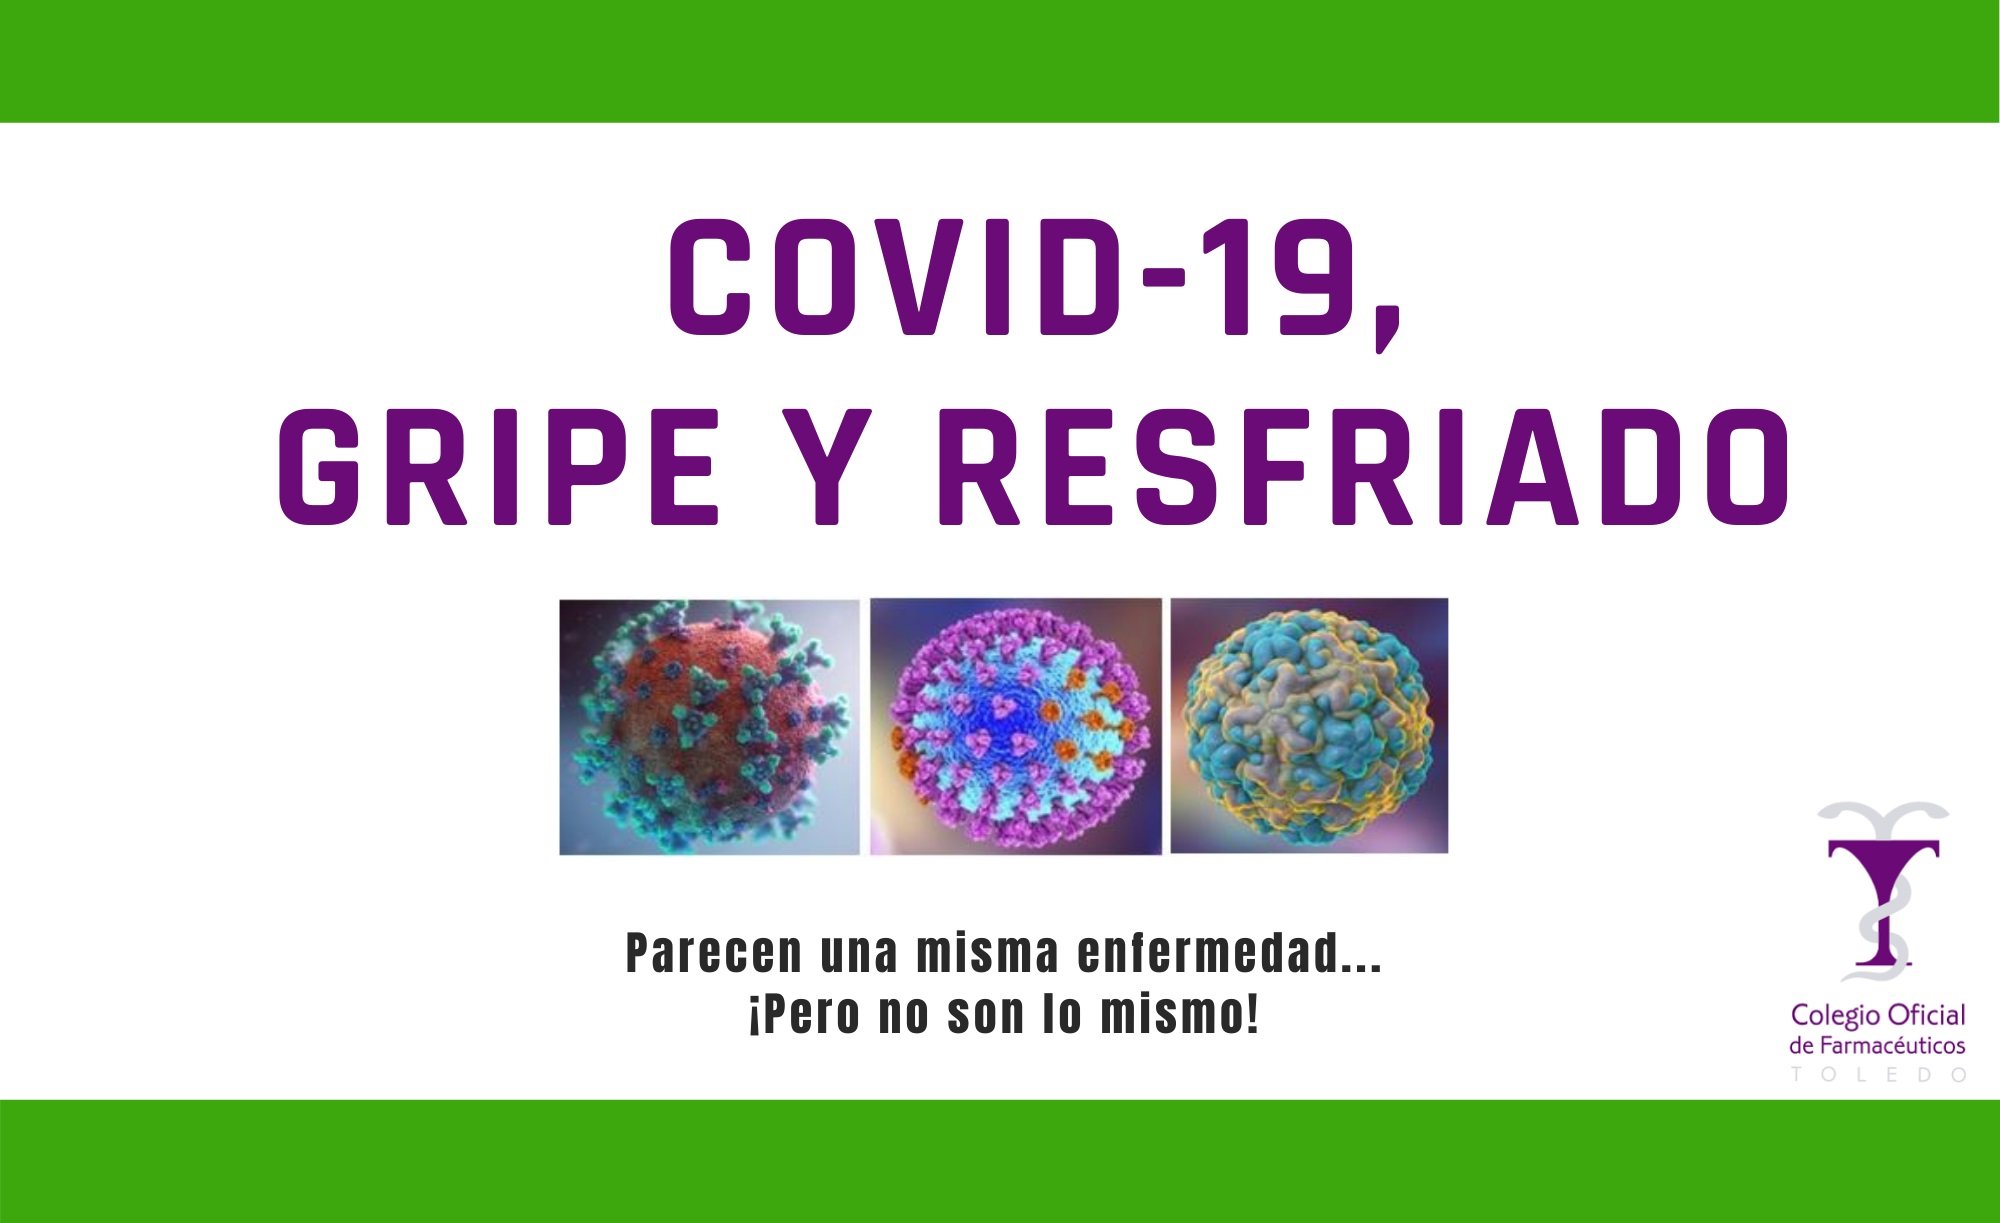 ¿Qué diferencias hay entre coronavirus, gripe y resfriado? Las farmacias de Toledo responden